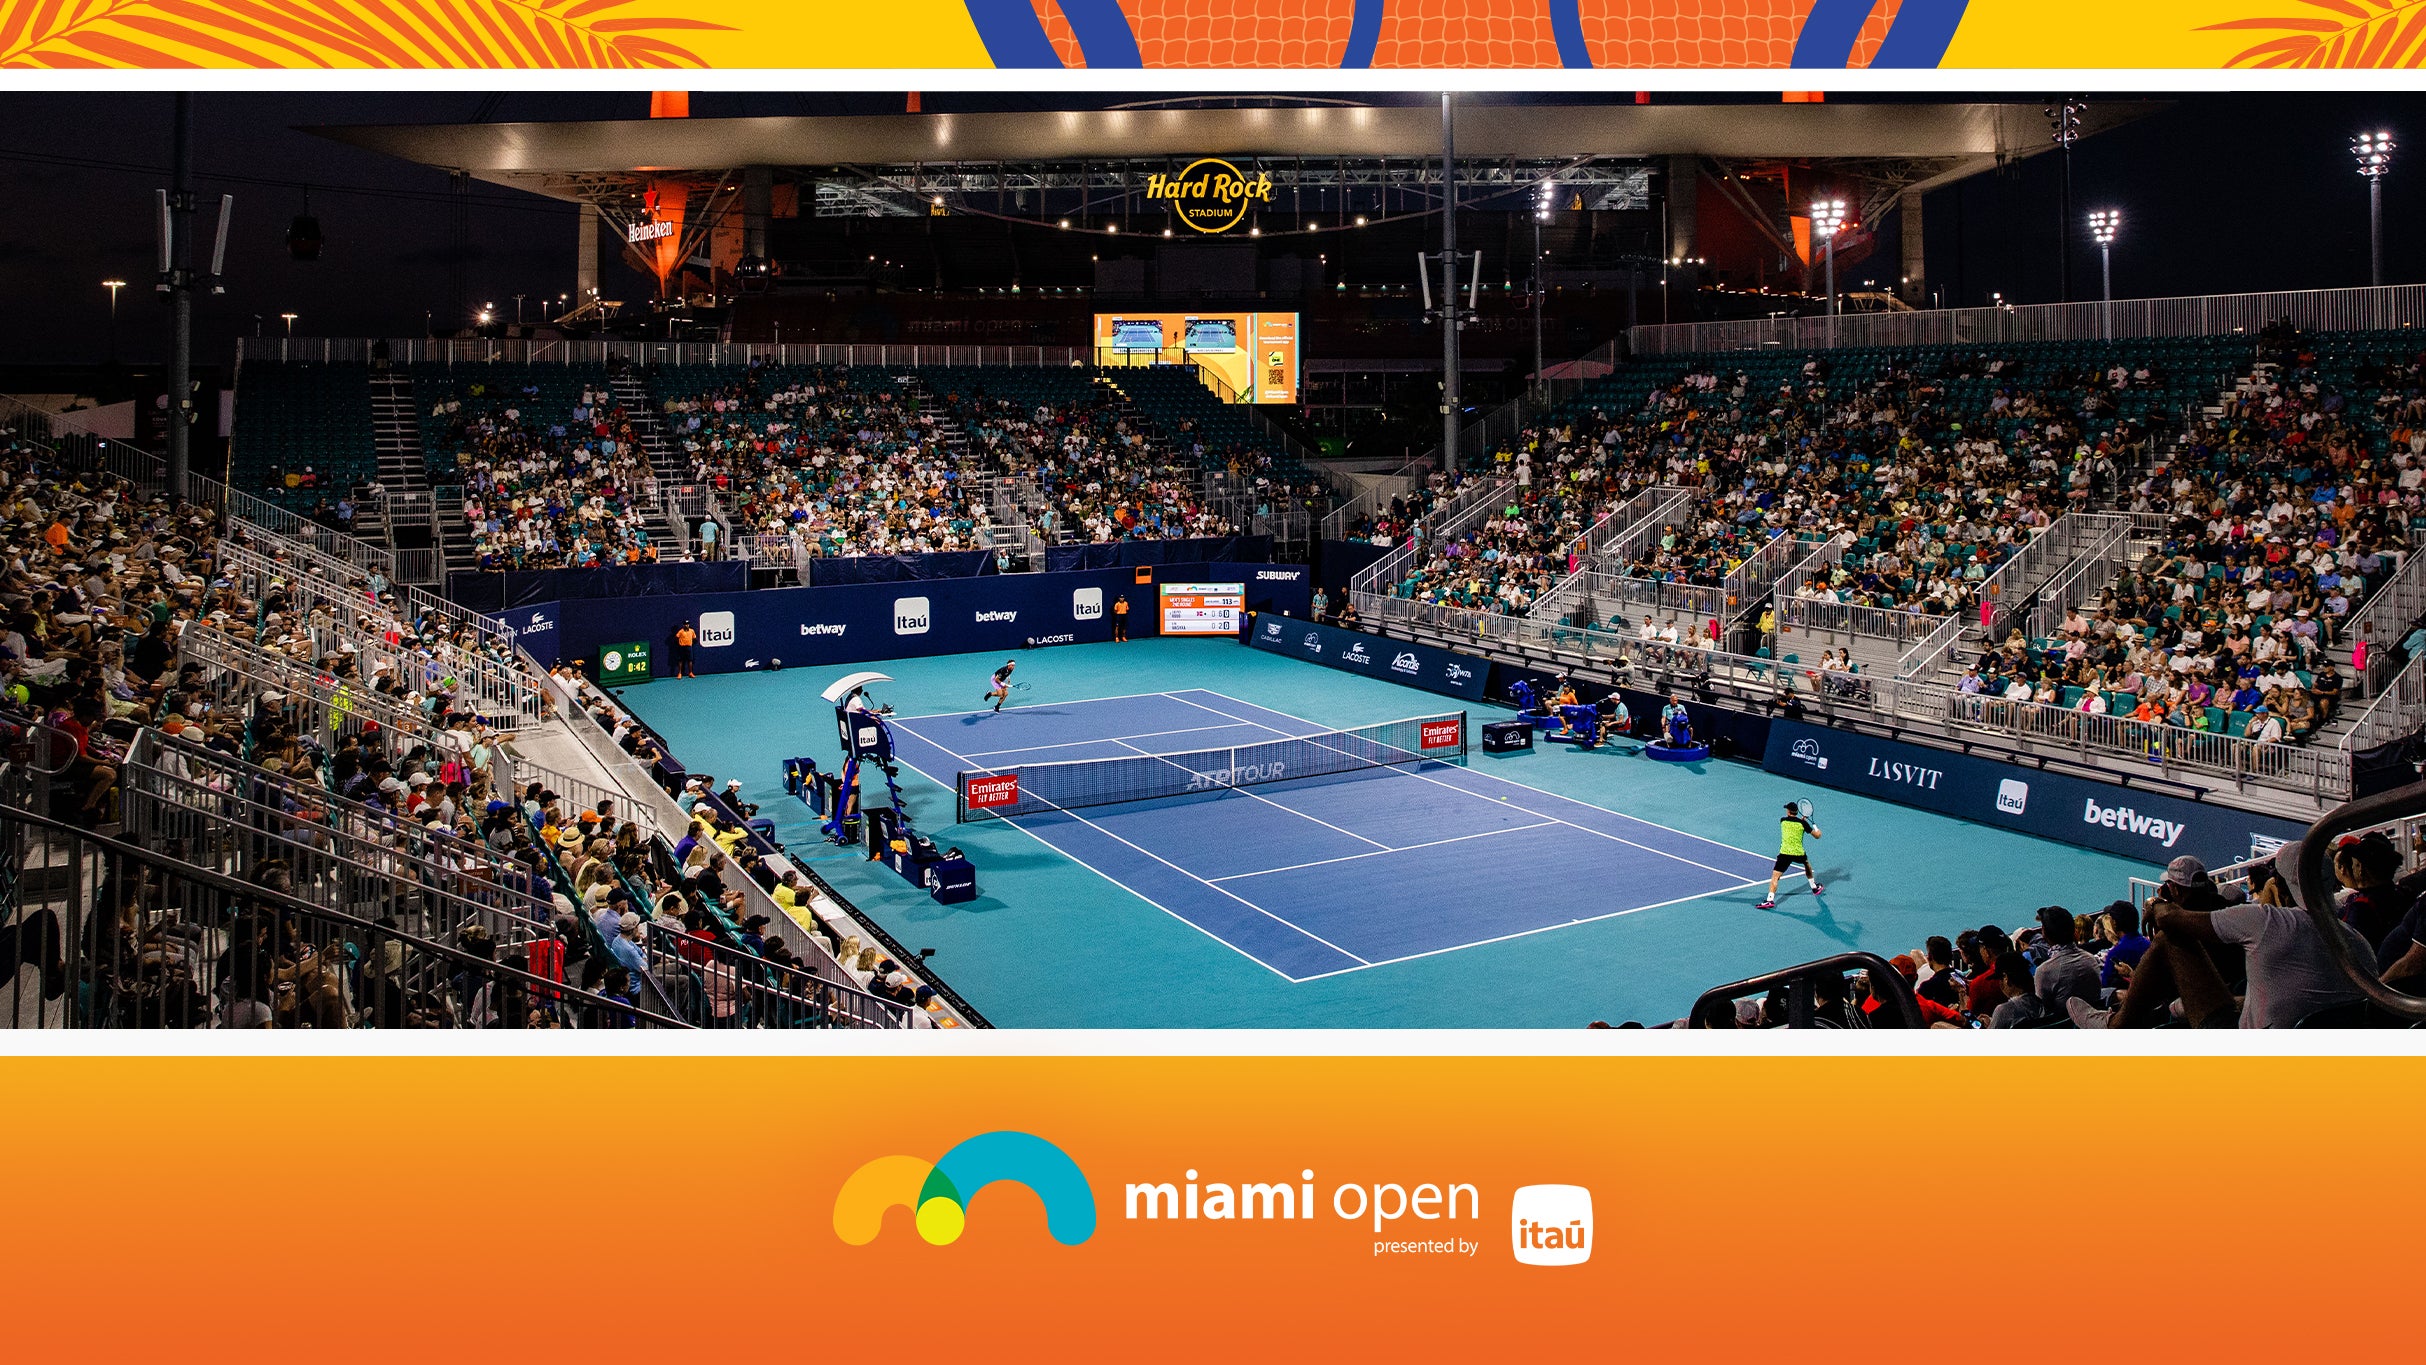 Miami Open - Grandstand Session 19 in Miami promo photo for Miami Open presale offer code